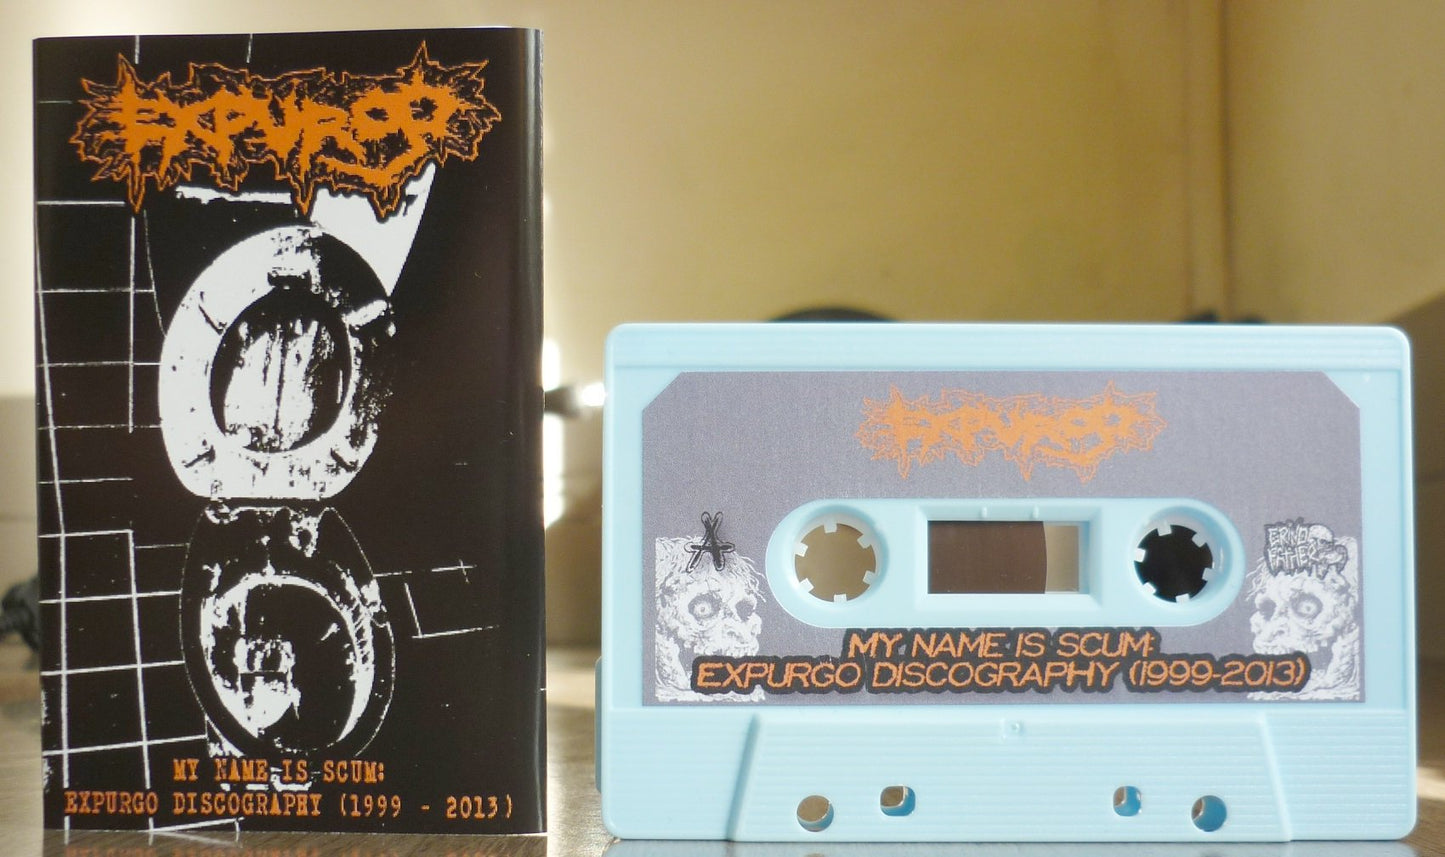 EXPURGO "My Name Is Scum - Expurgo Discography (1999-2013)" Tape